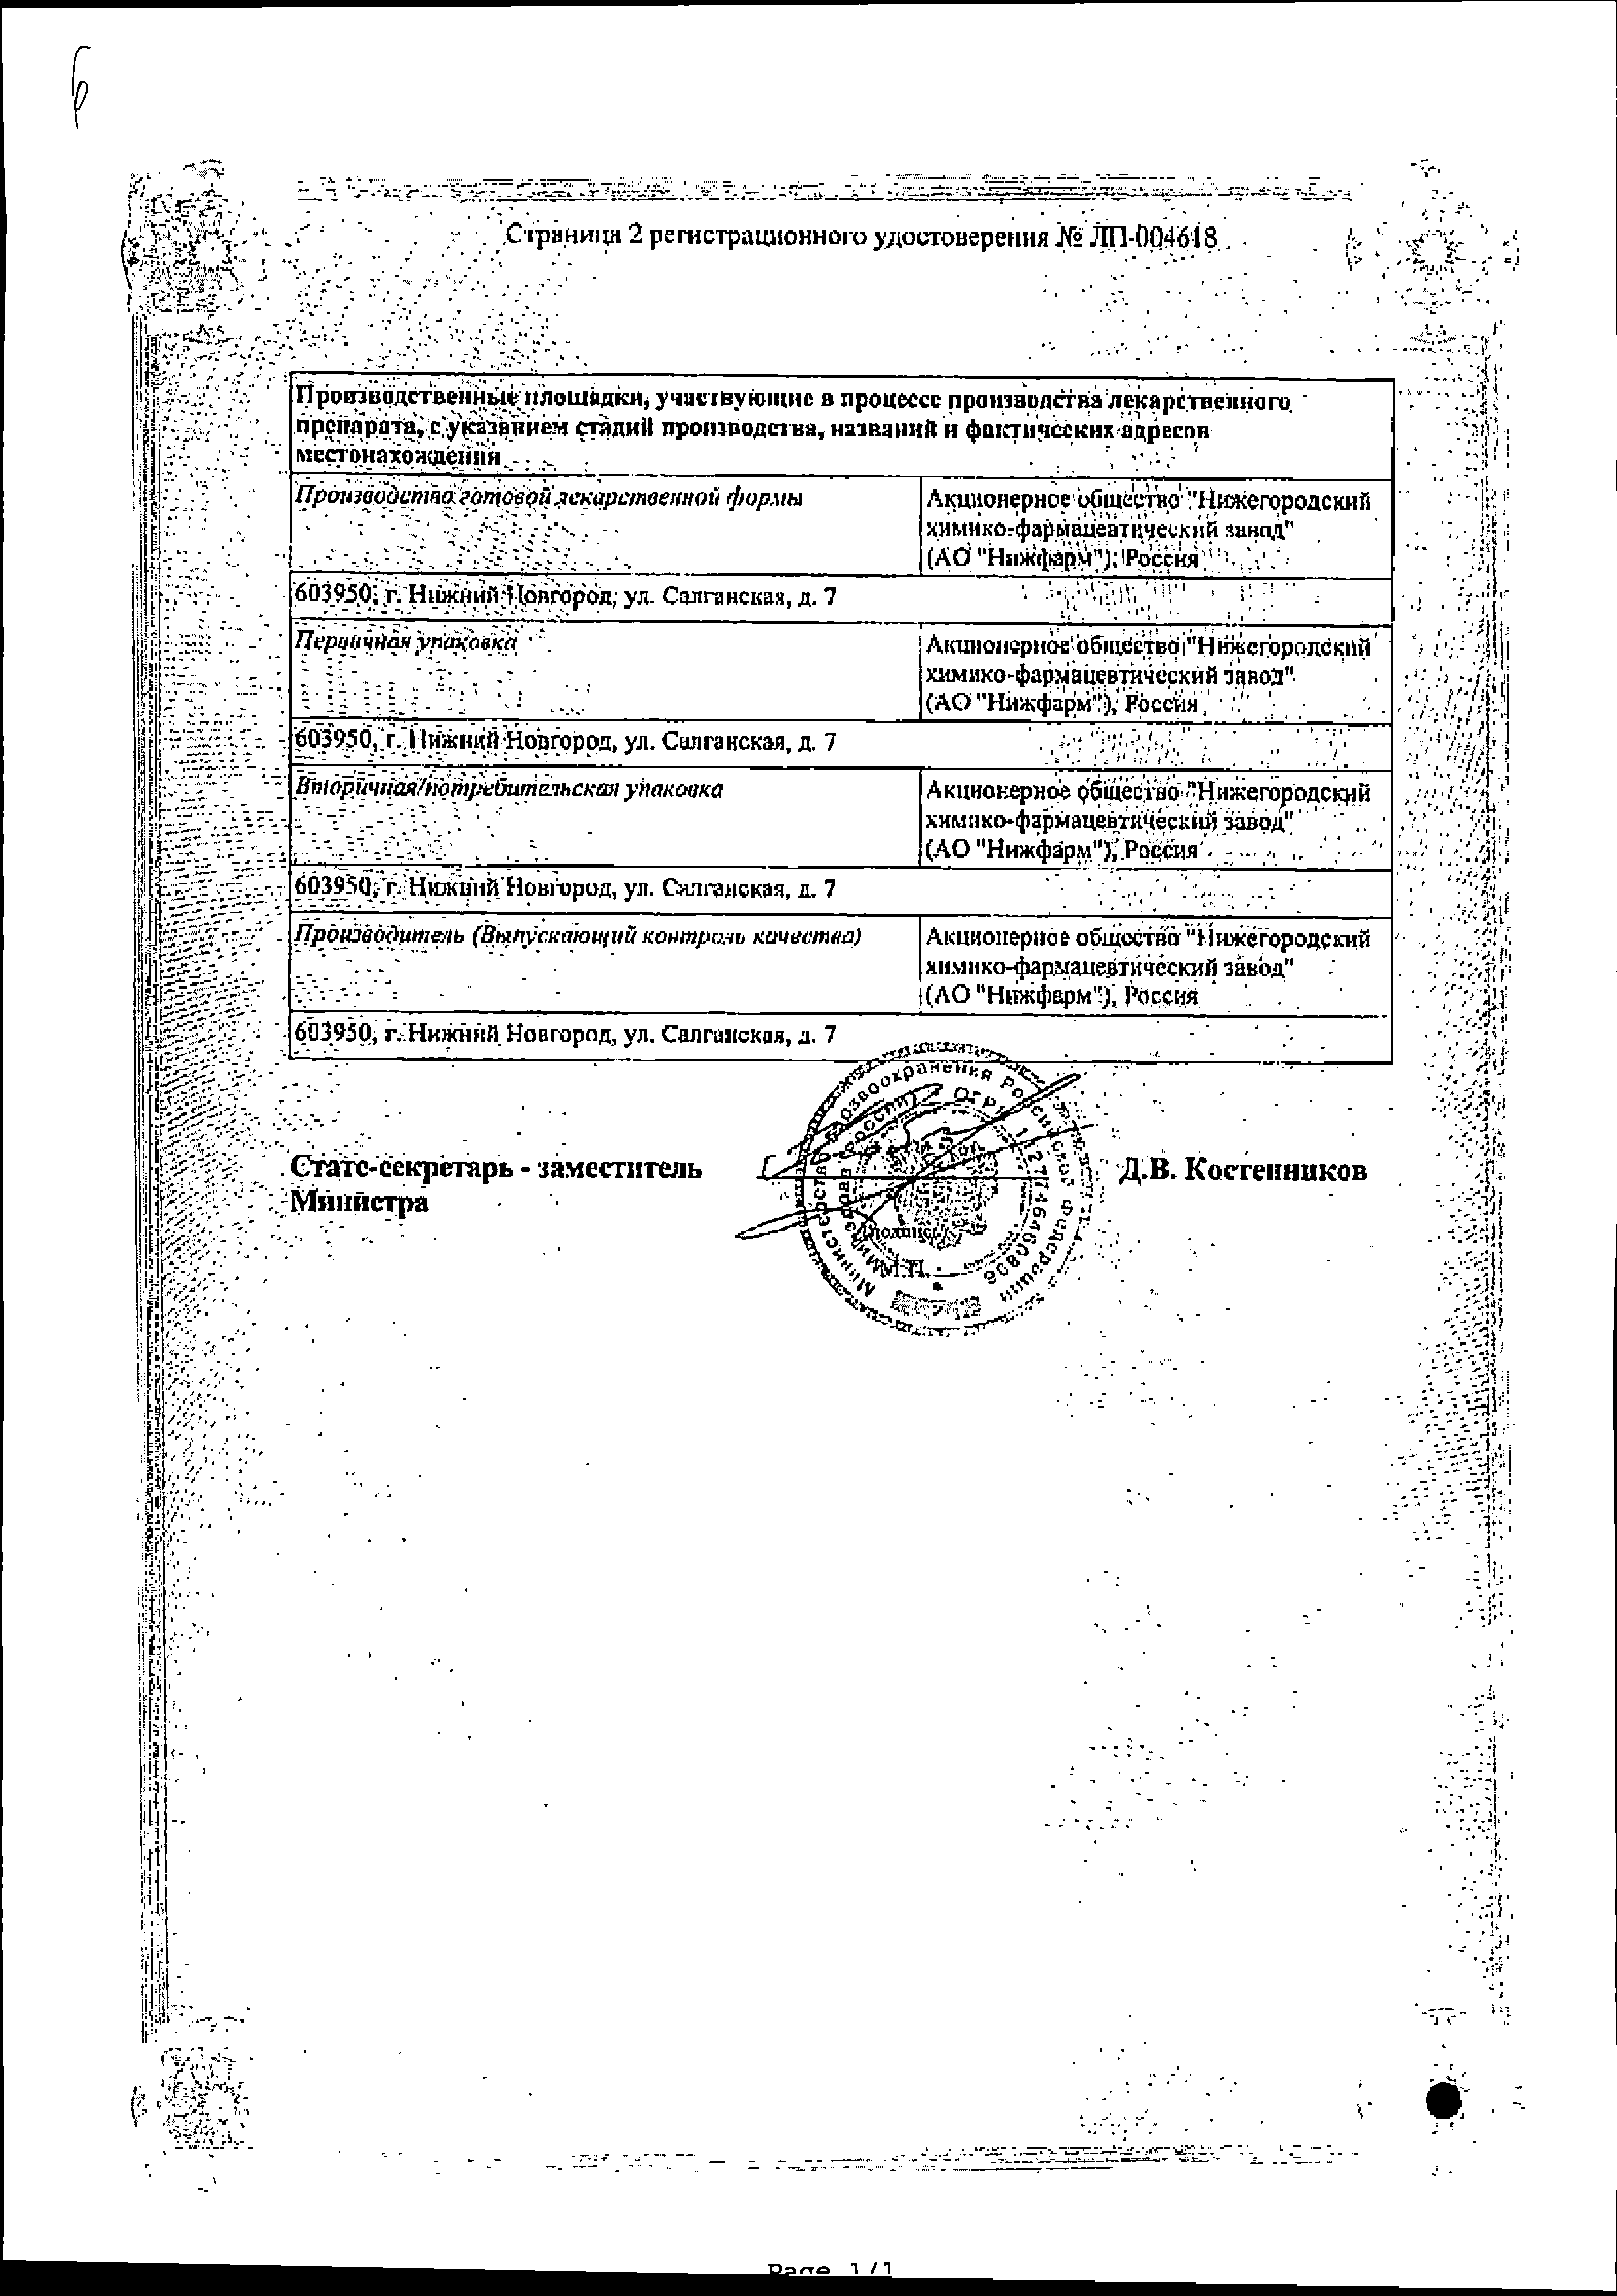 Д-Пантенол-Нижфарм сертификат